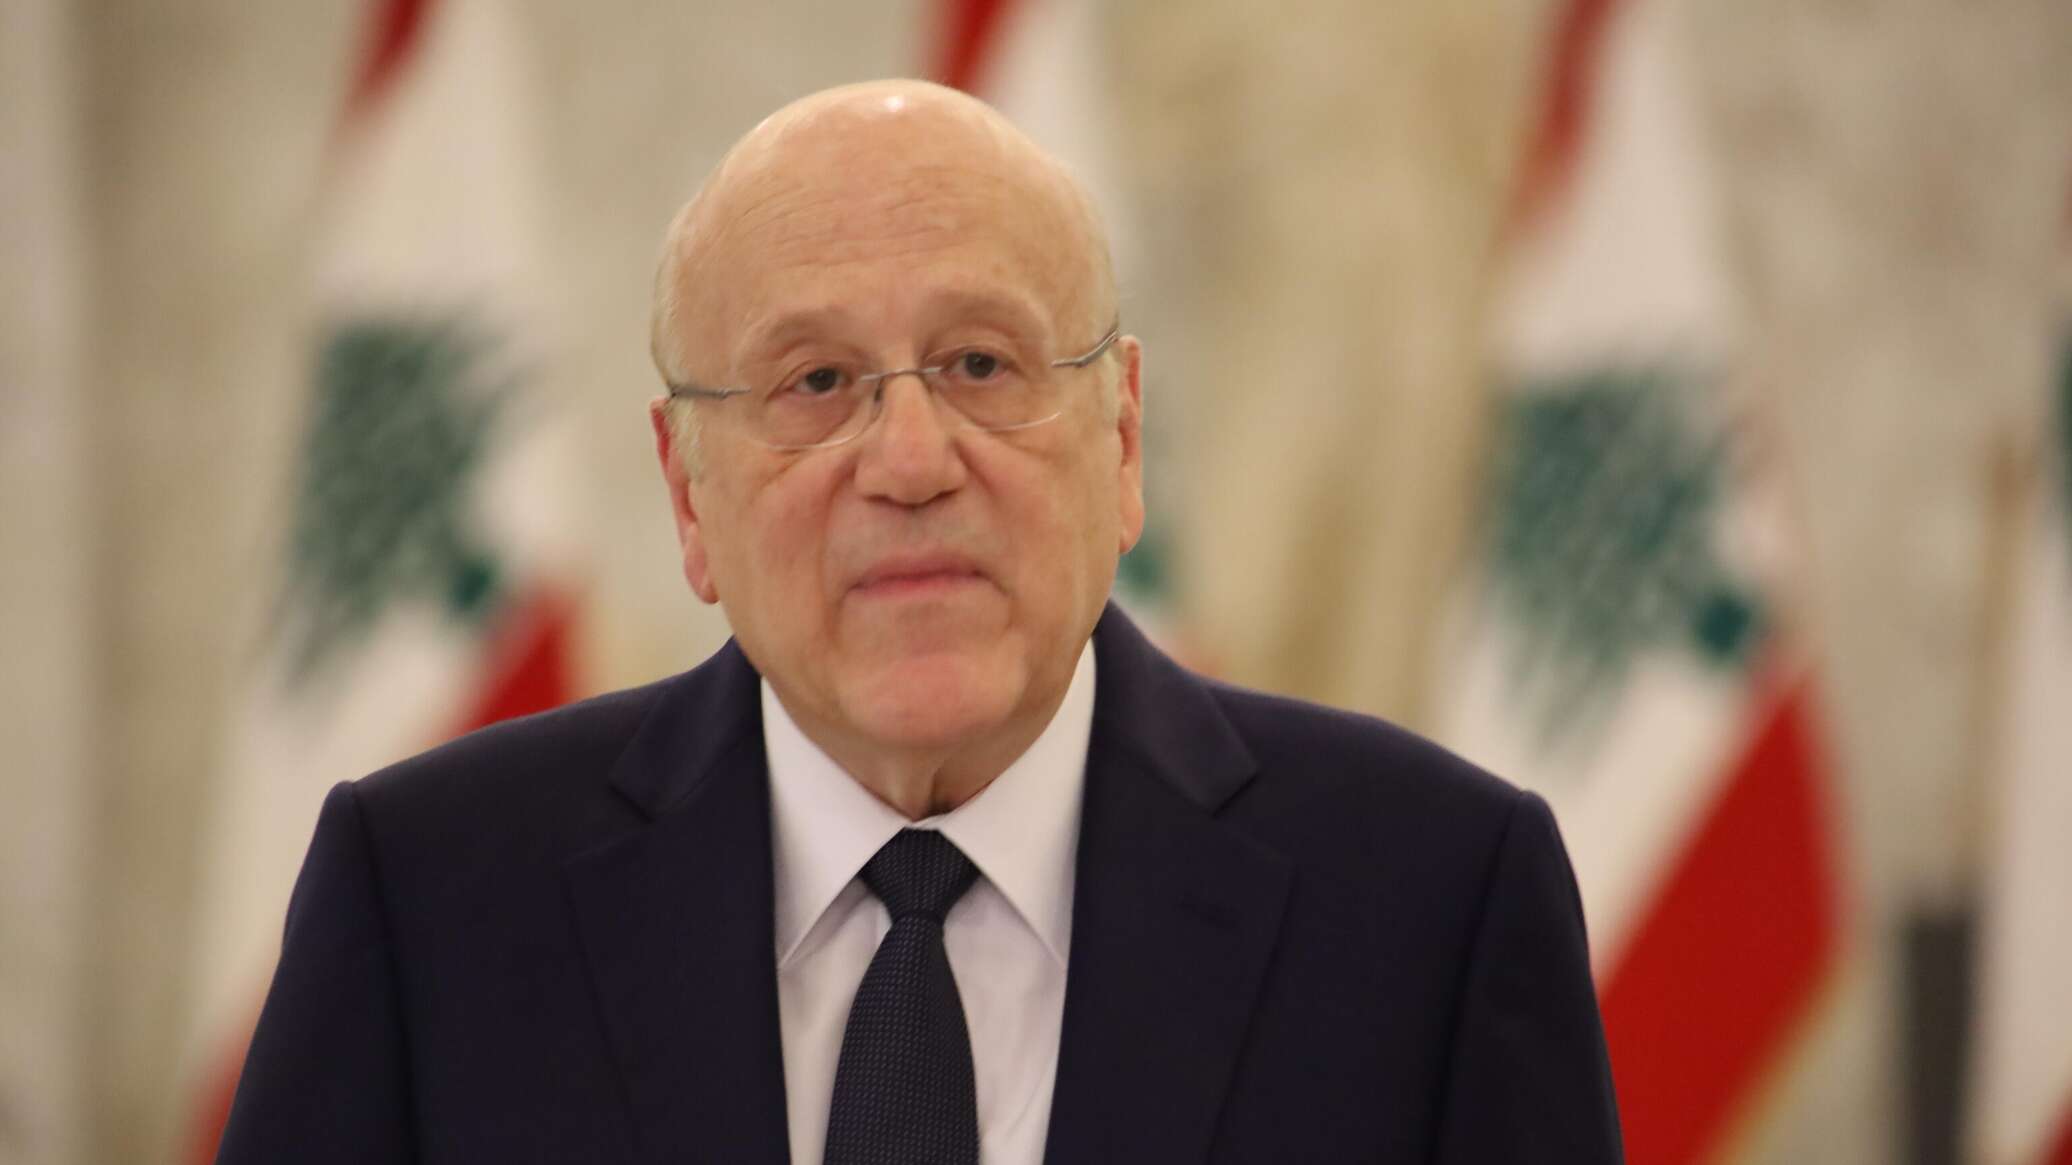 ميقاتي: لبنان يطالب المجتمع الدولي بالضغط على إسرائيل لوقف التعديات اليومية على سيادته